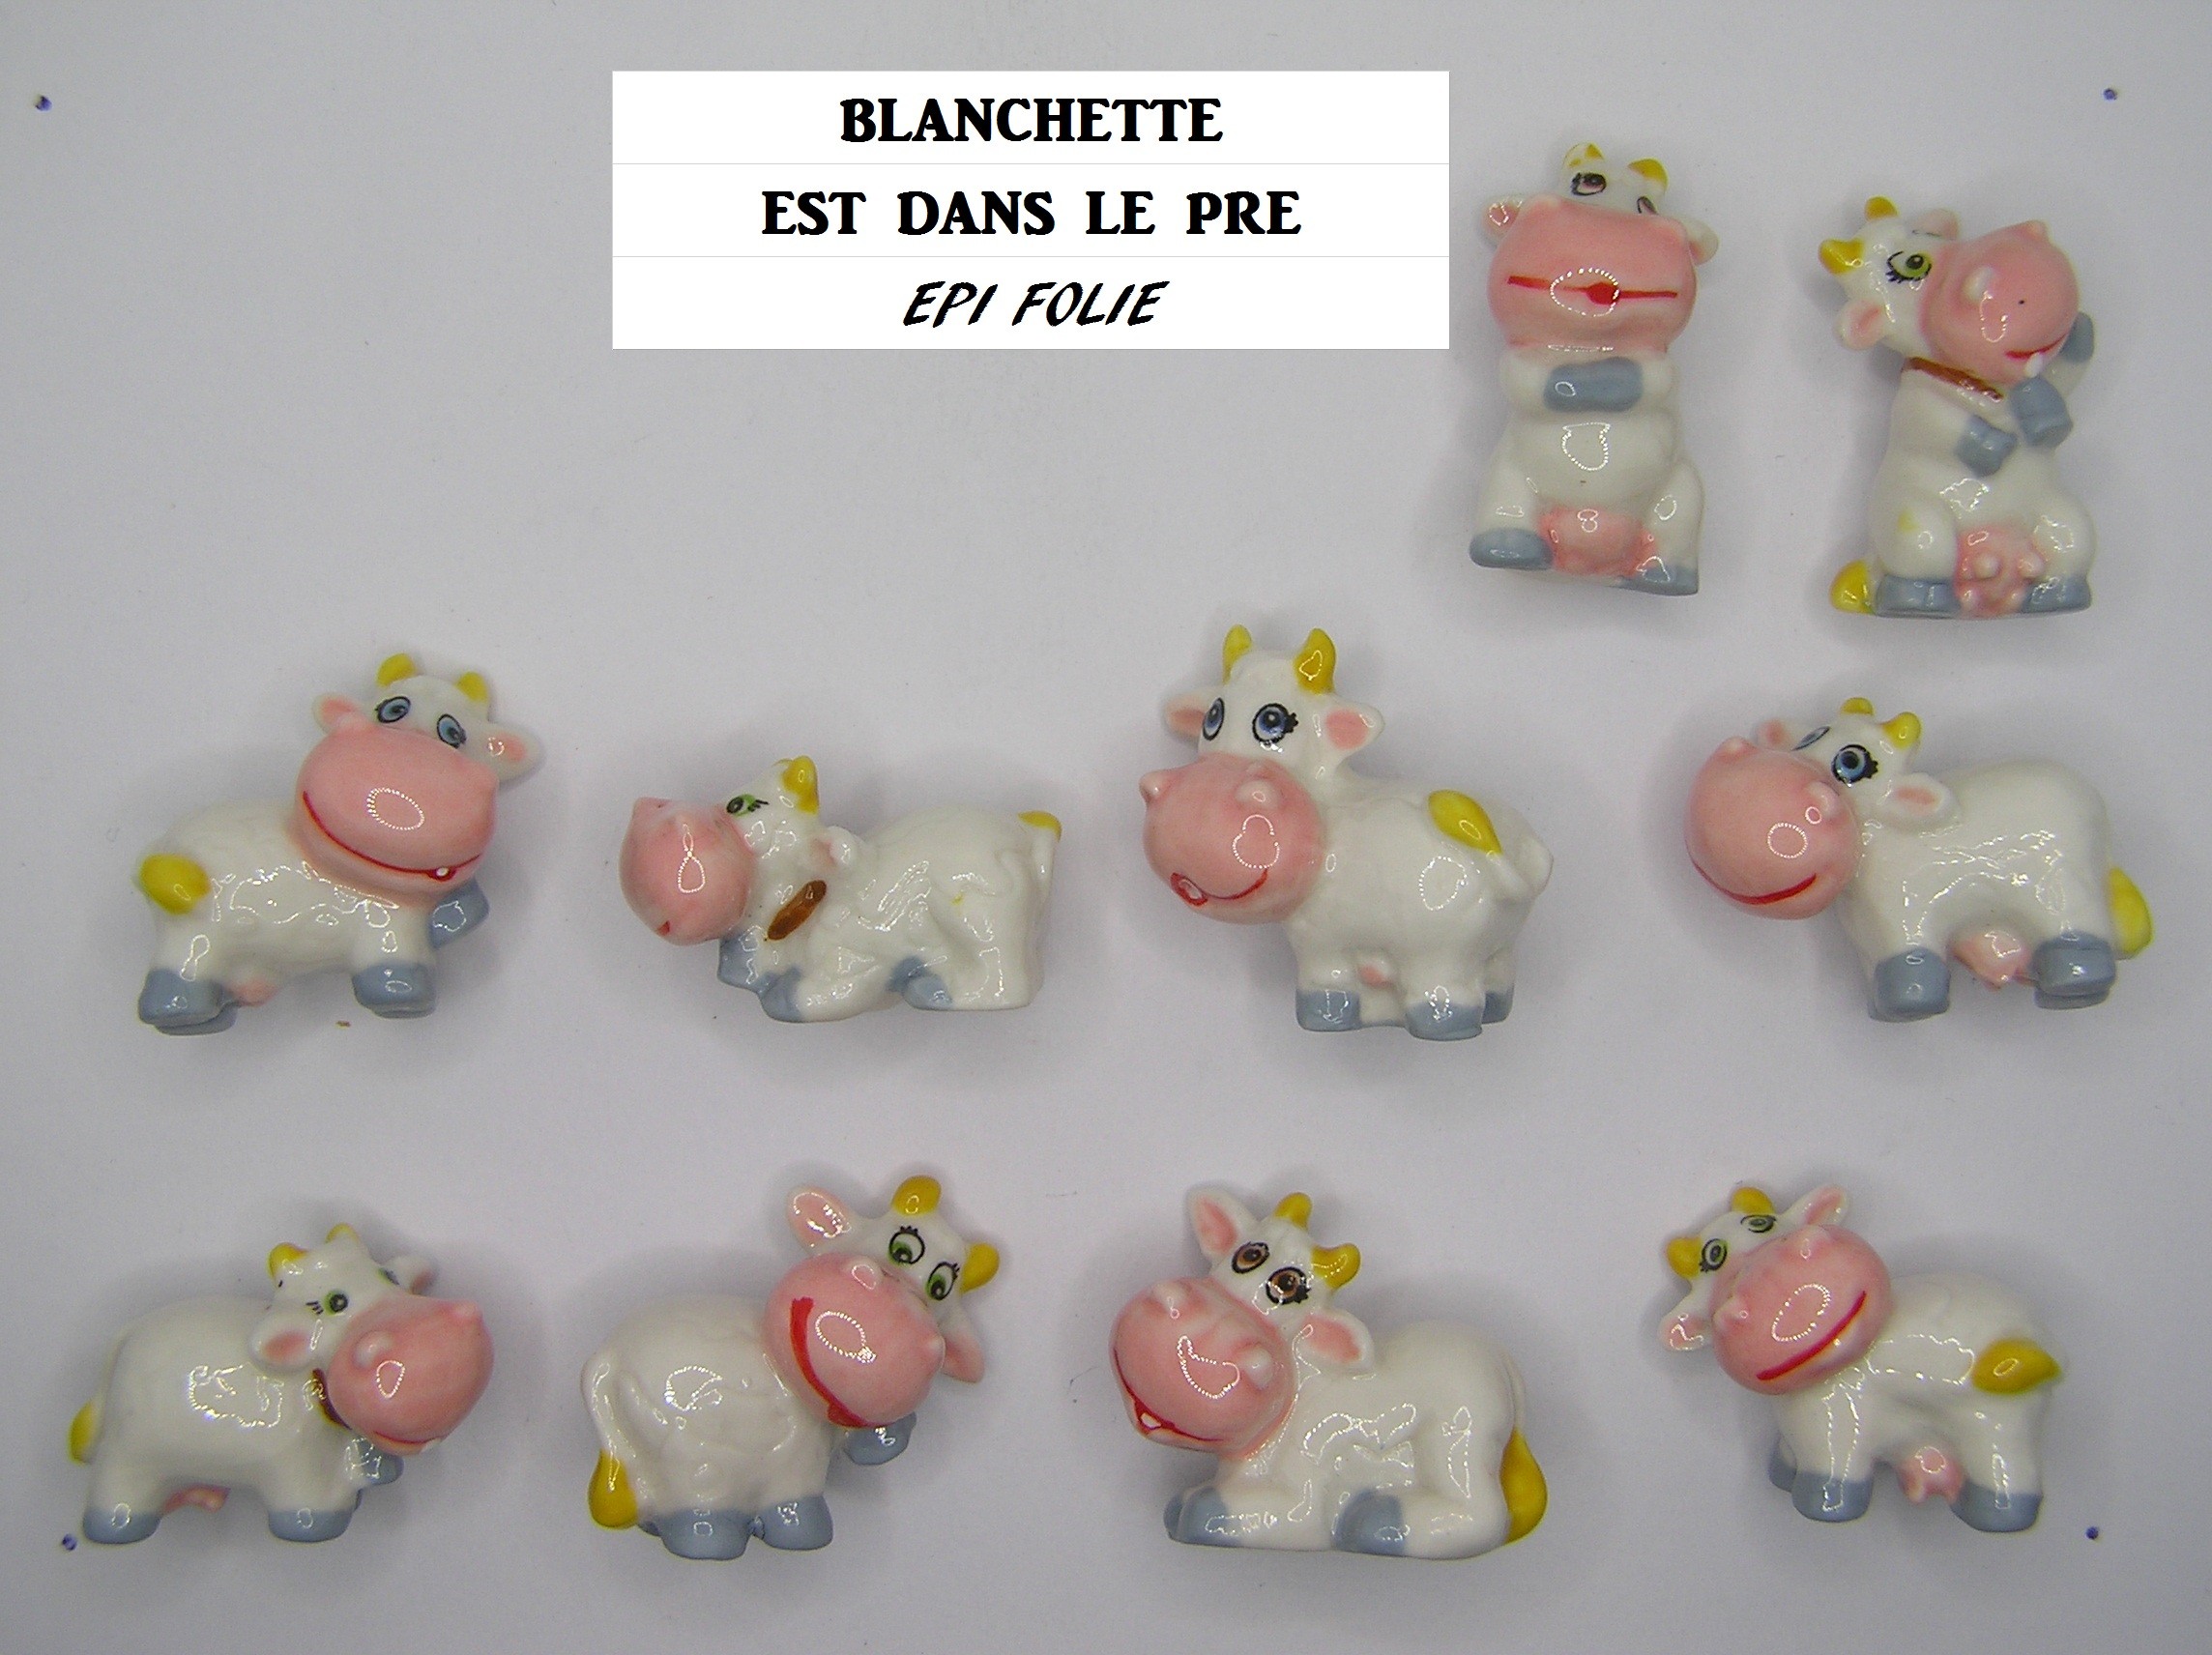 D 07 / BLANCHETTE EST DANS LE PRE vache / épuisée / EPI FOLIE - PRIME / AFF 90.2019